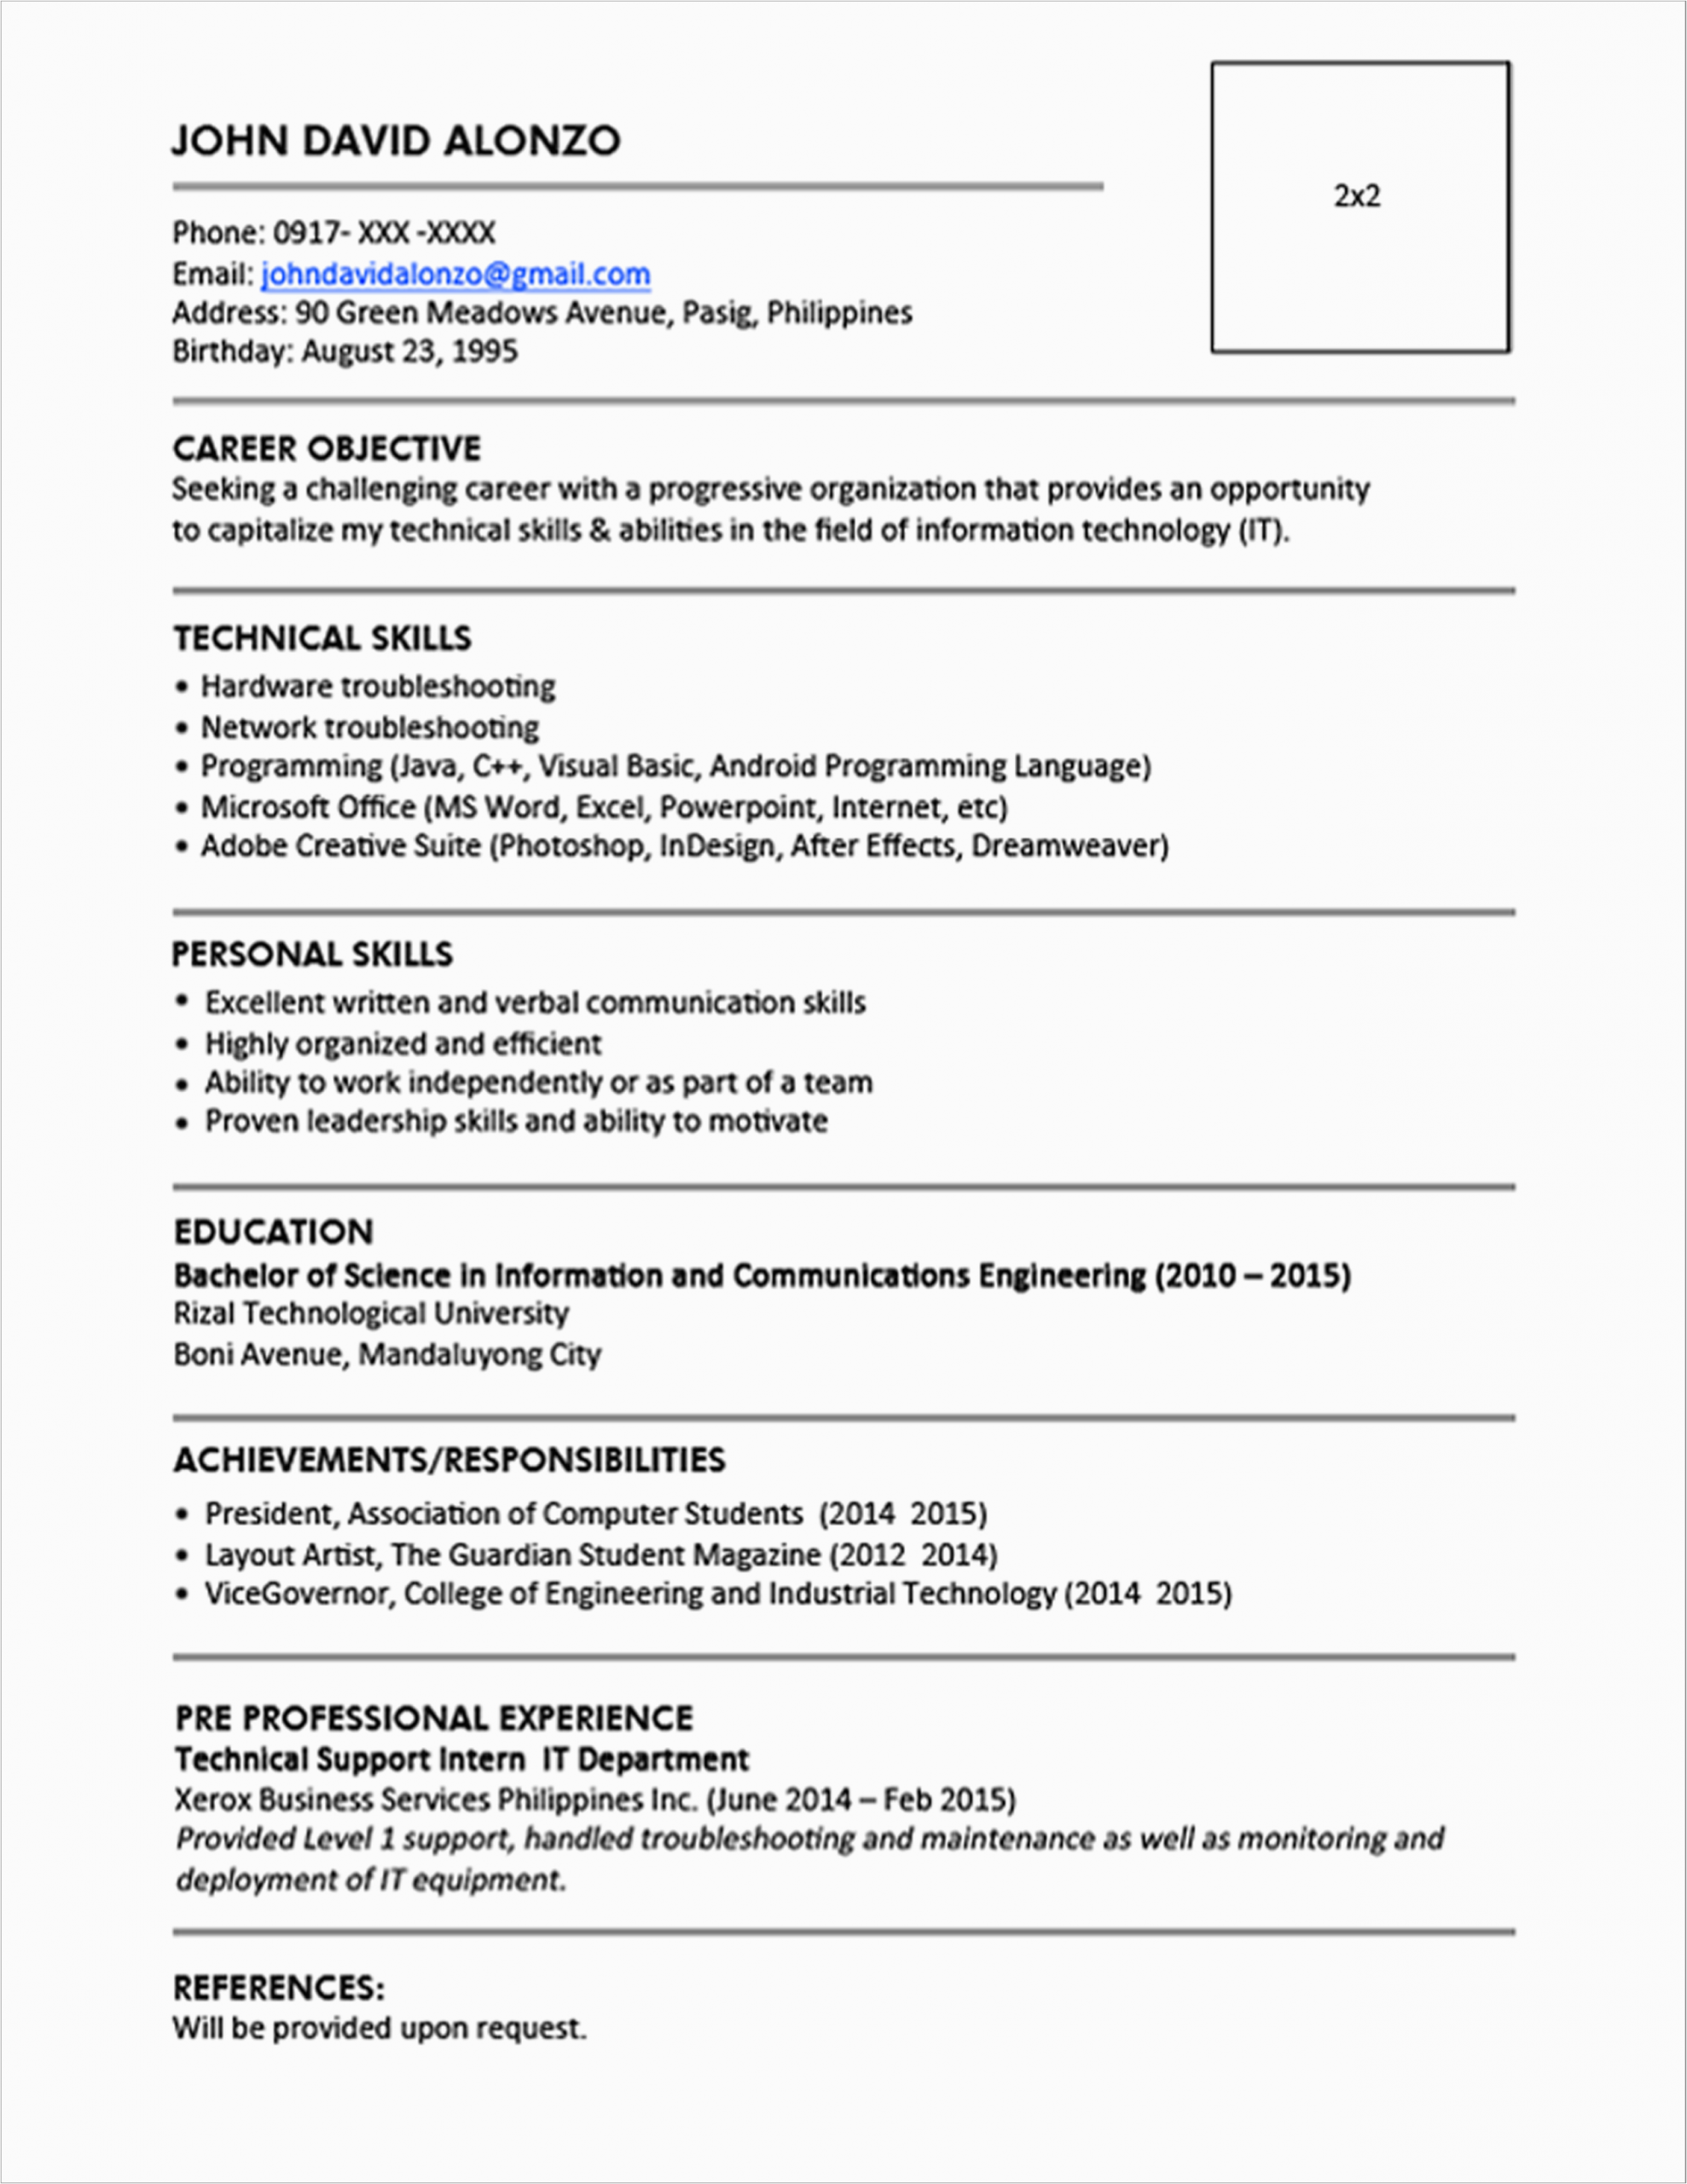 Best Sample Of Resume for Fresh Graduate Fresh Graduate Engineering Resume Sample Best Resume